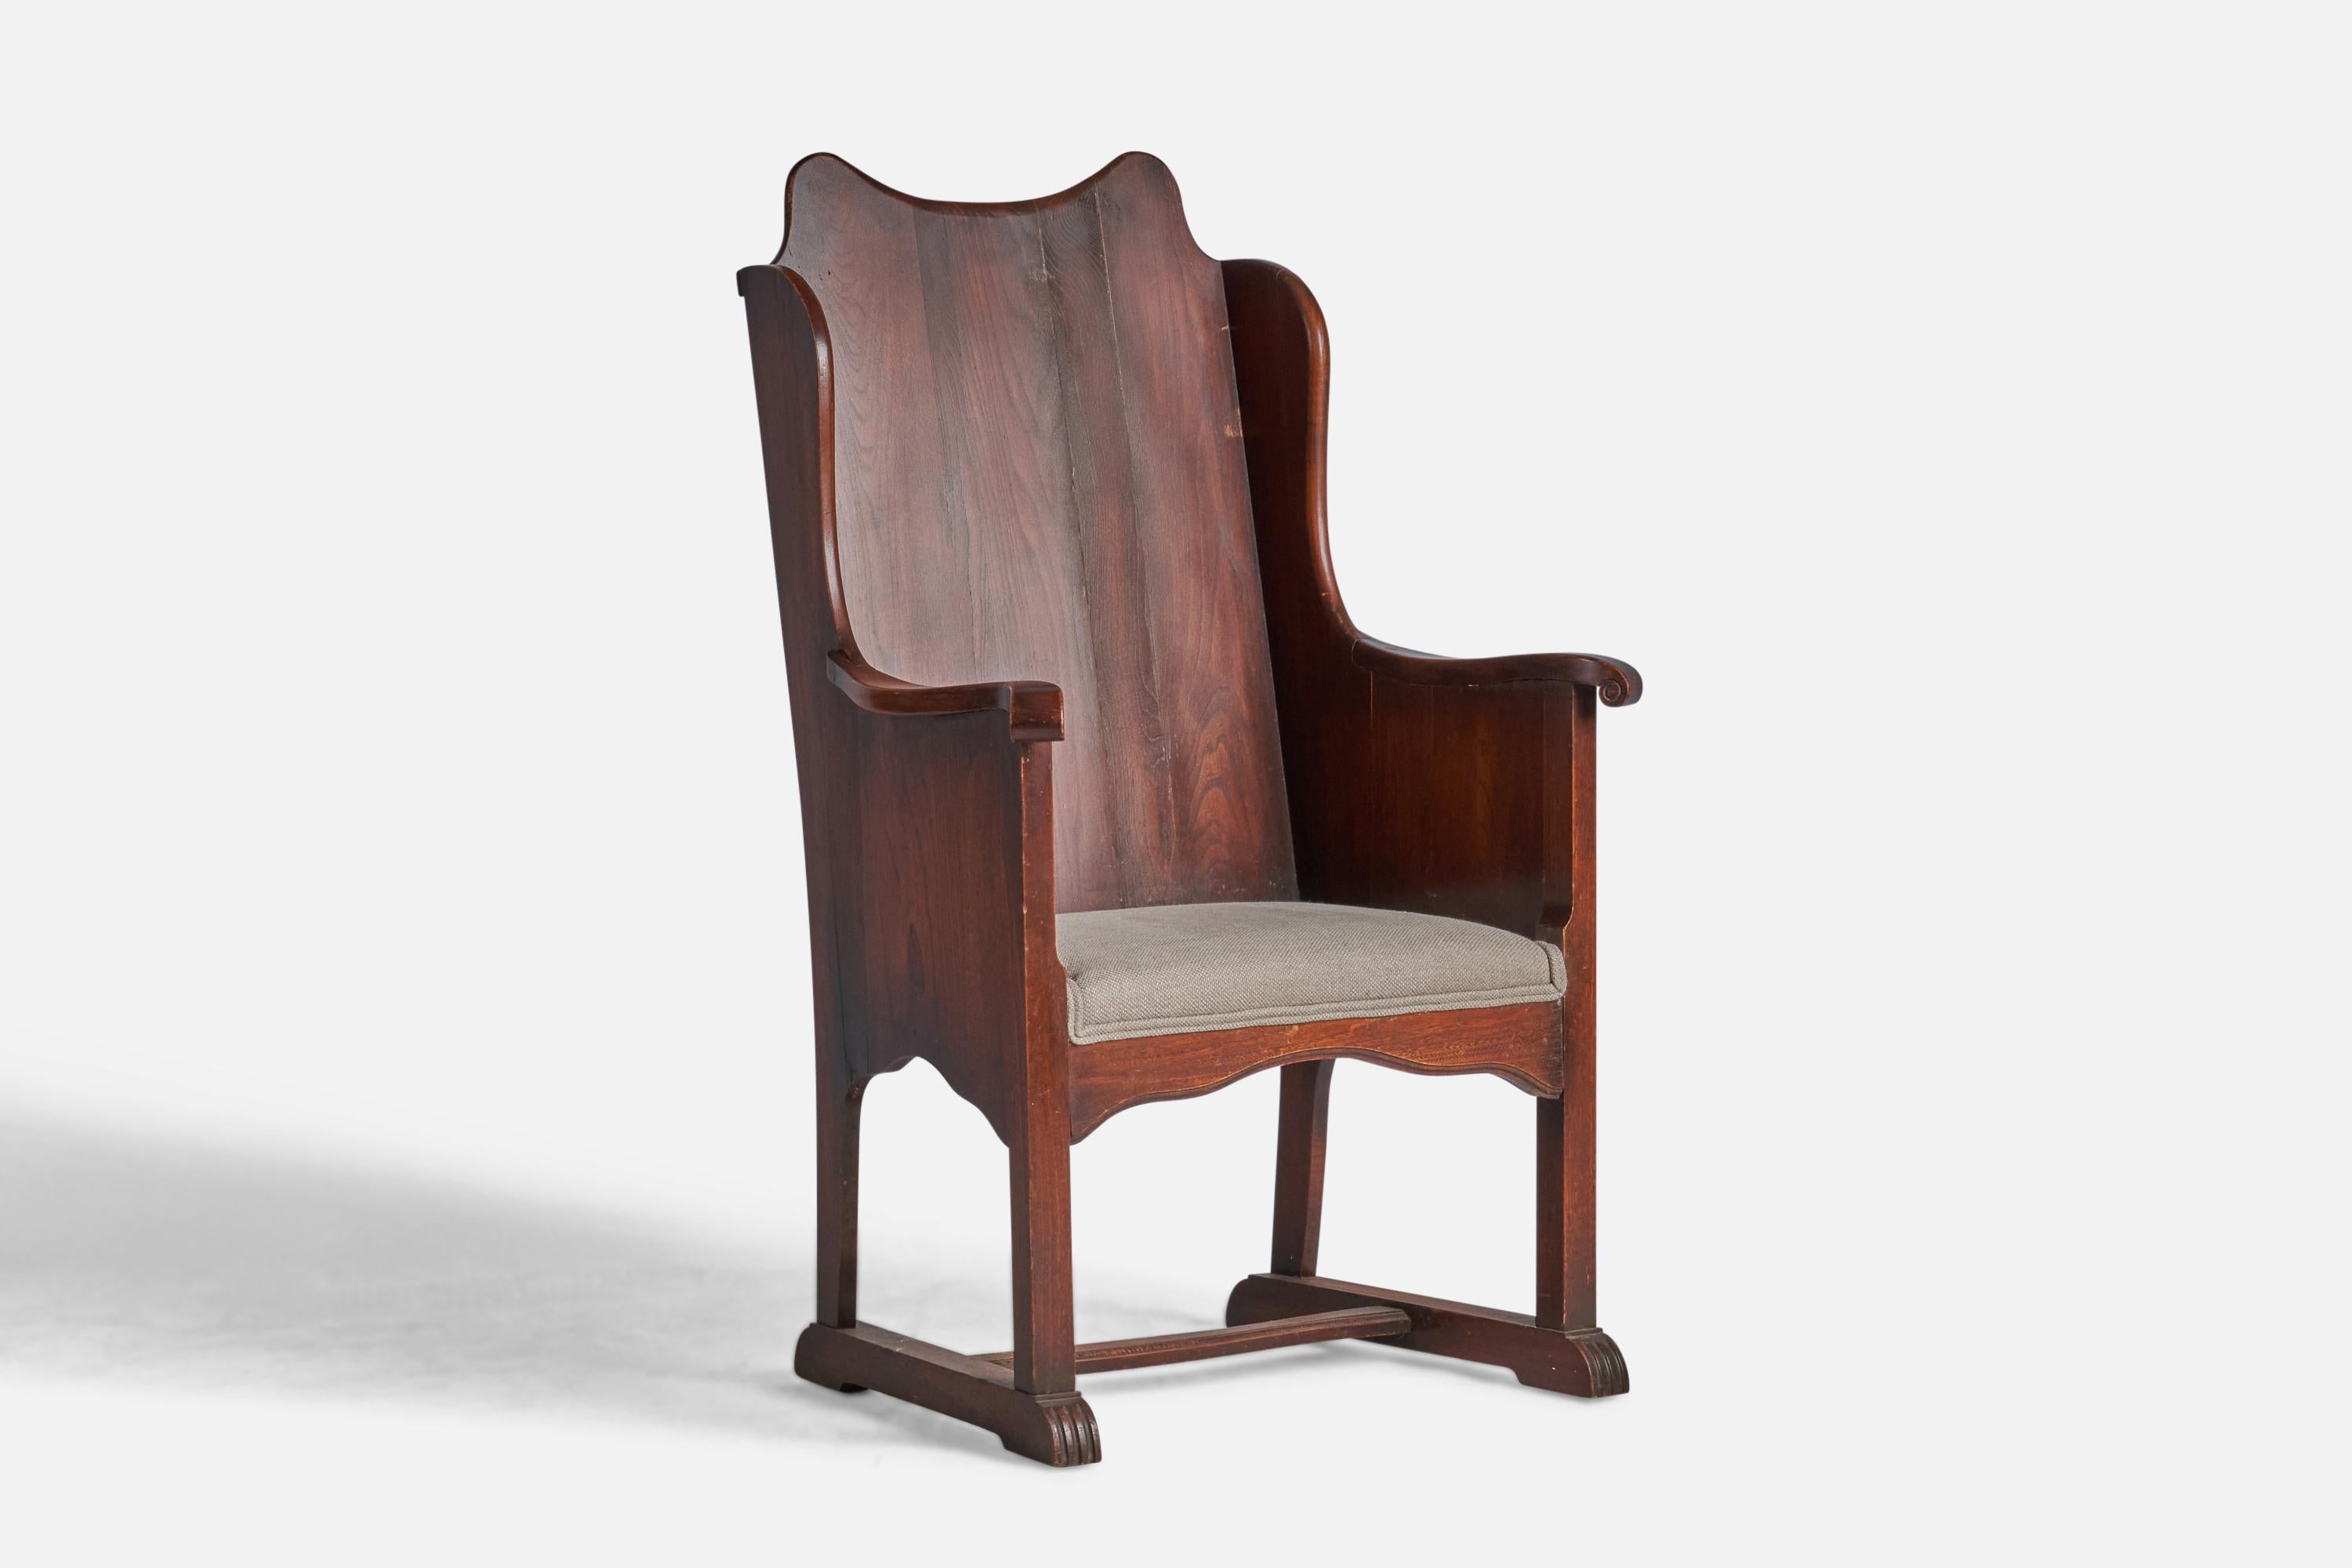 Chaise d'appoint ou de salon en chêne teinté et tissu gris beige, conçue et fabriquée aux Etats-Unis, vers les années 1930.

Hauteur d'assise de 16,75 pouces